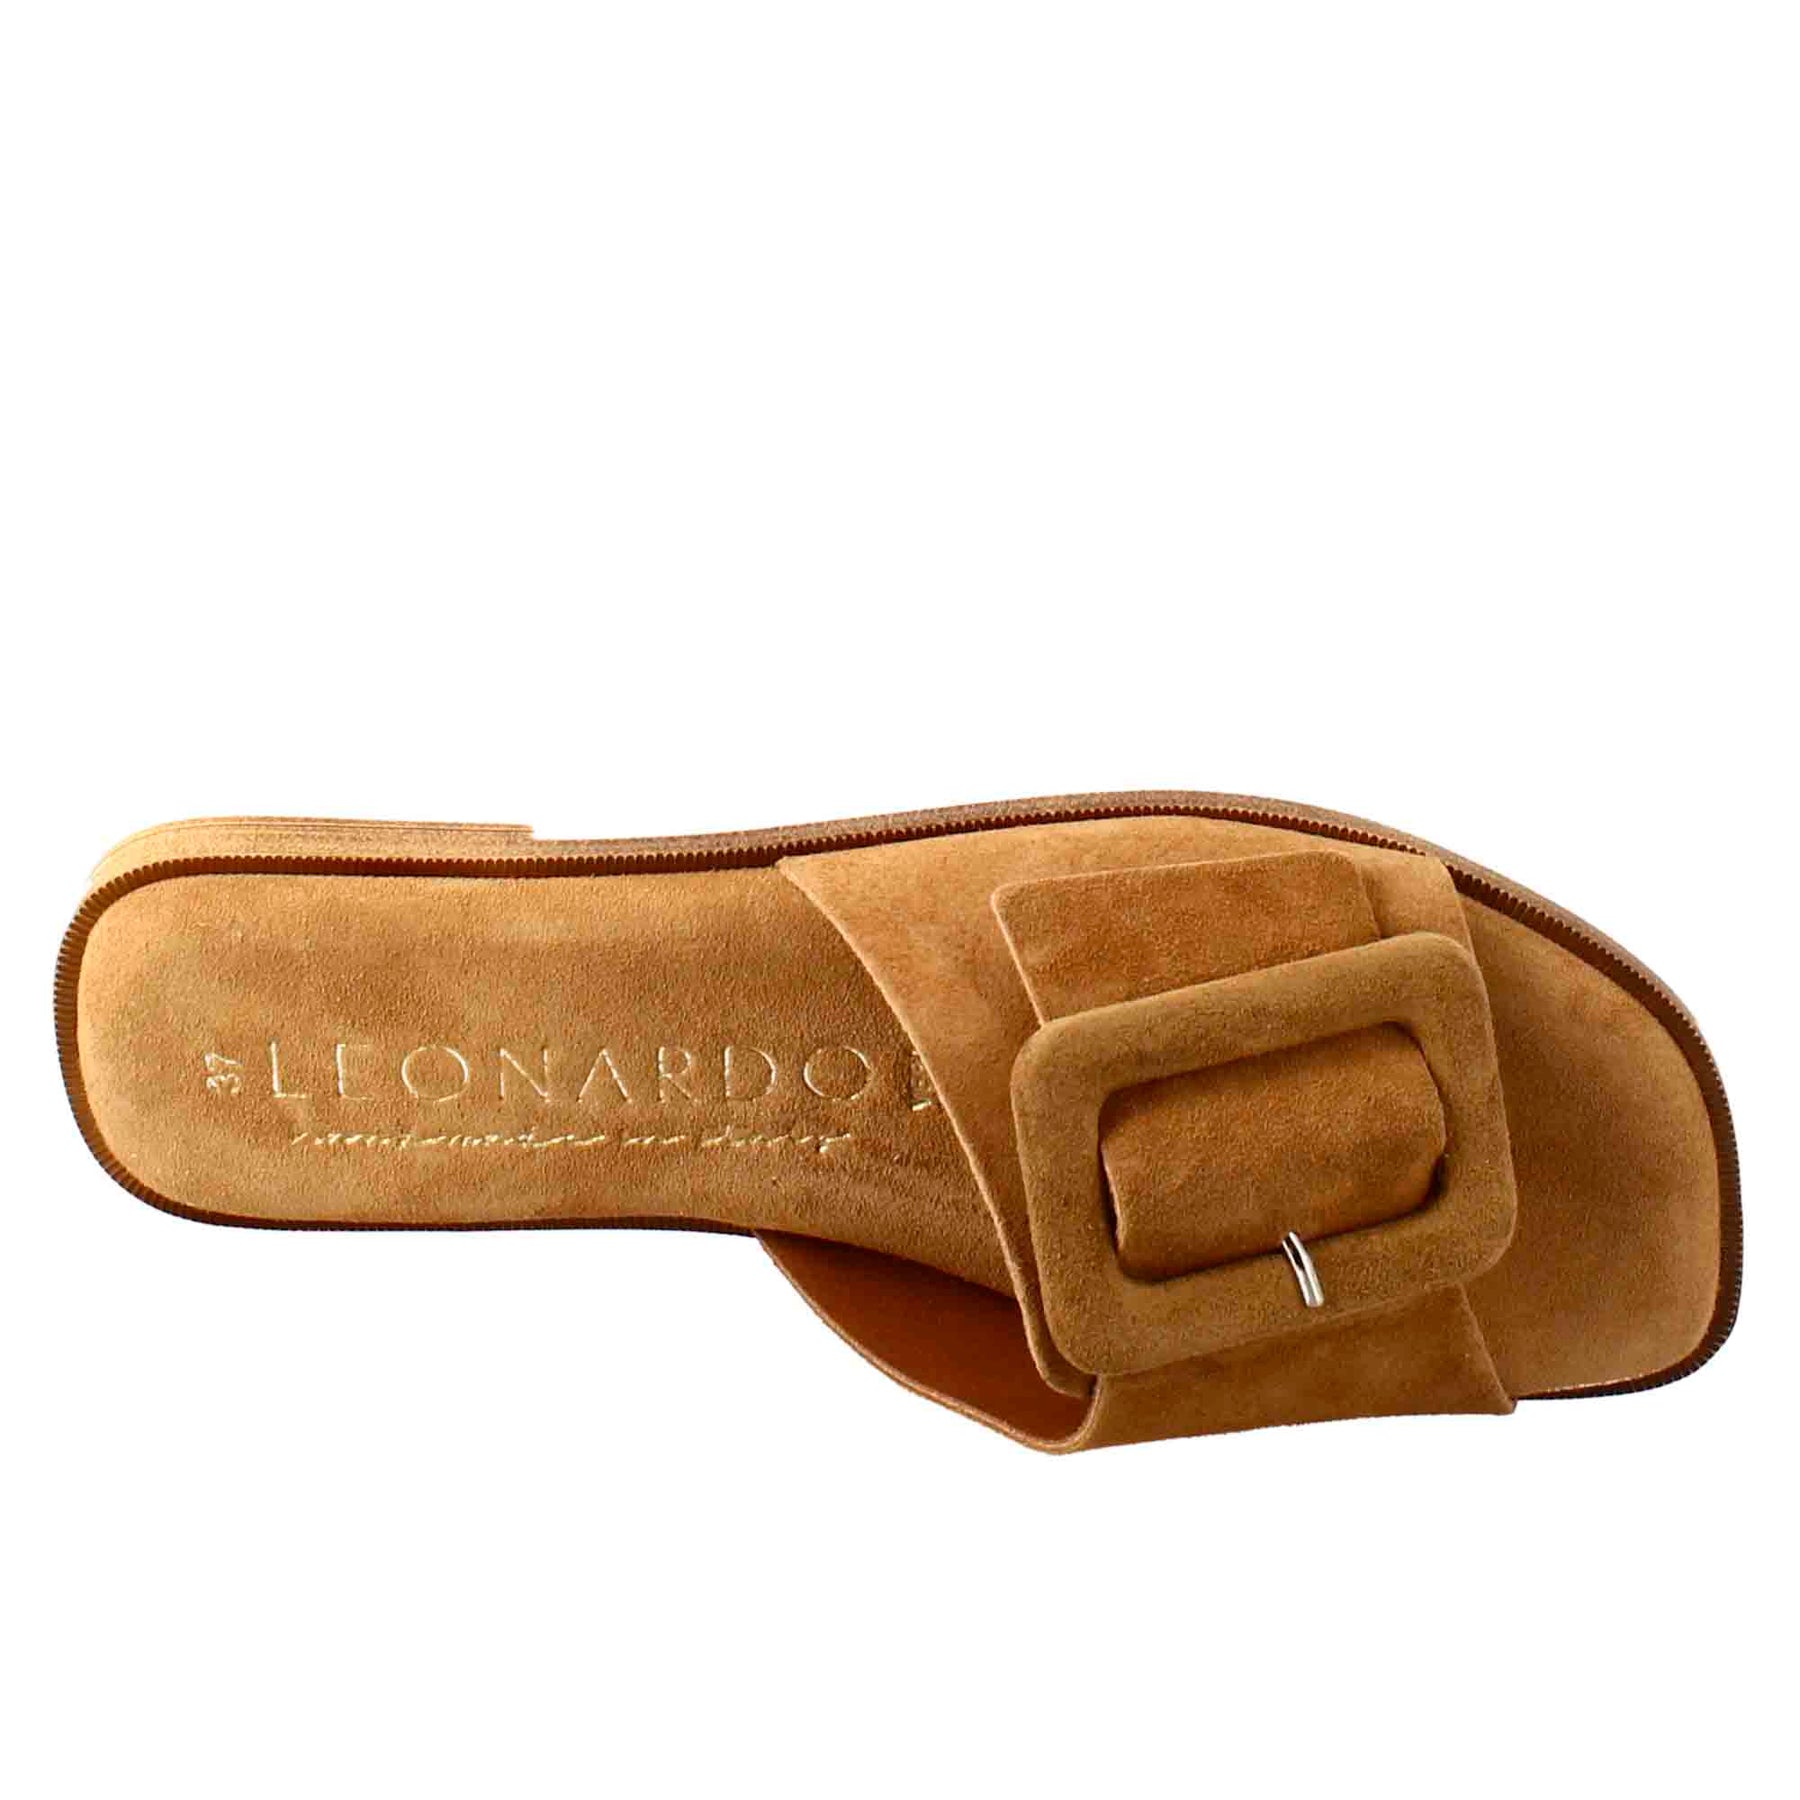 Sandale basse pour femme en daim marron